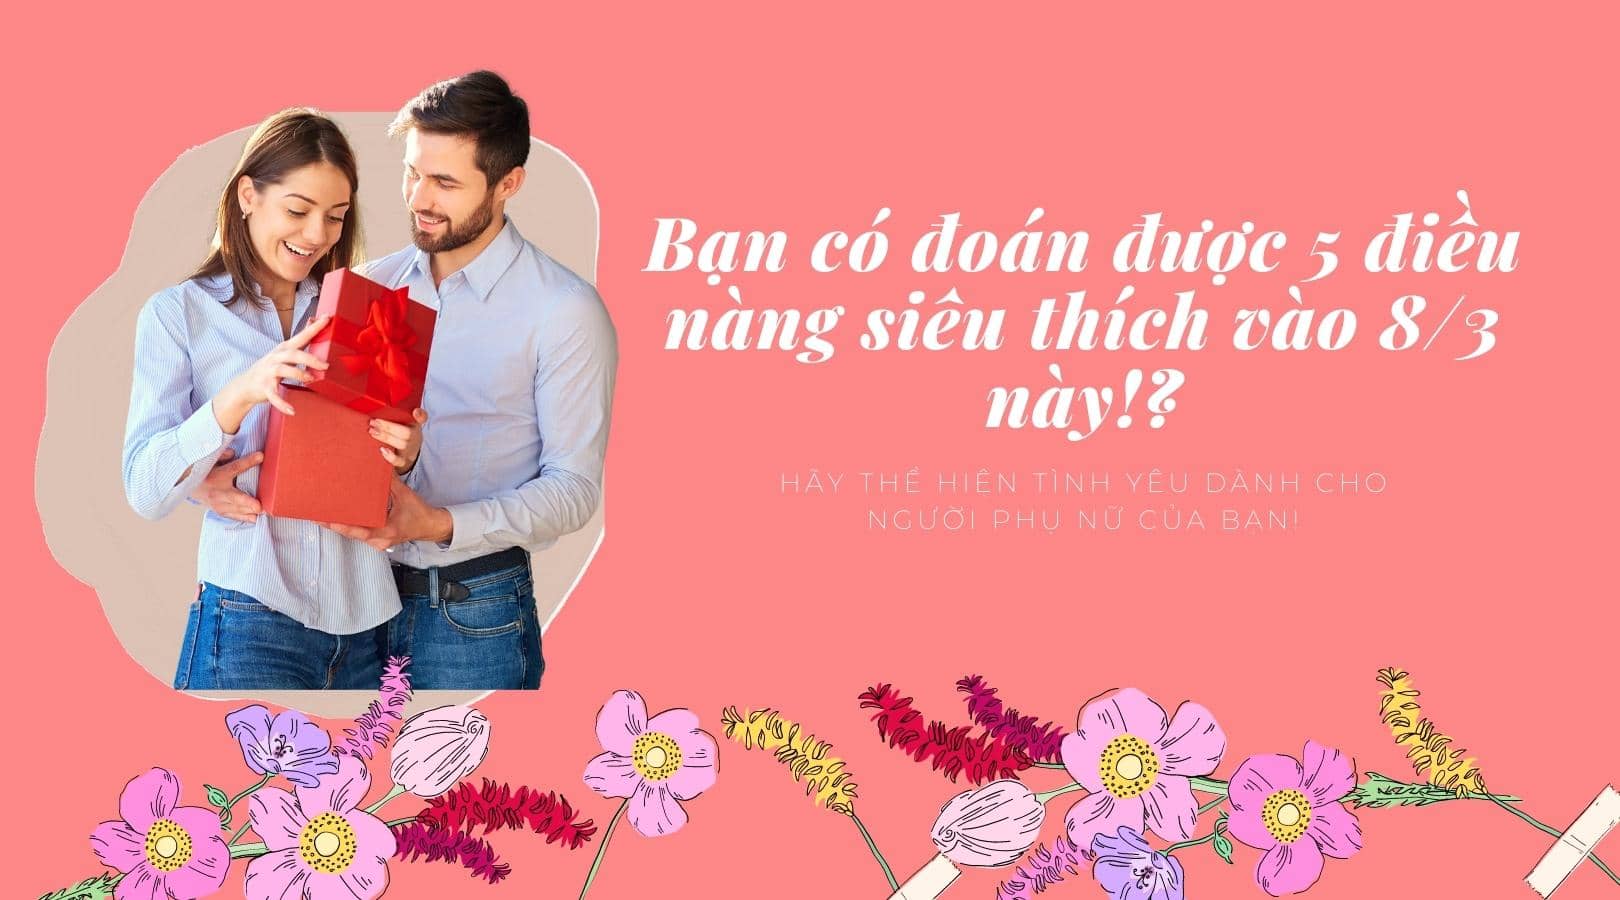 Hồng Có hoa Lòng biết ơn Dành cho Mẹ Ảnh bìa Facebook (900 × 900 px) (1620 × 900 px)